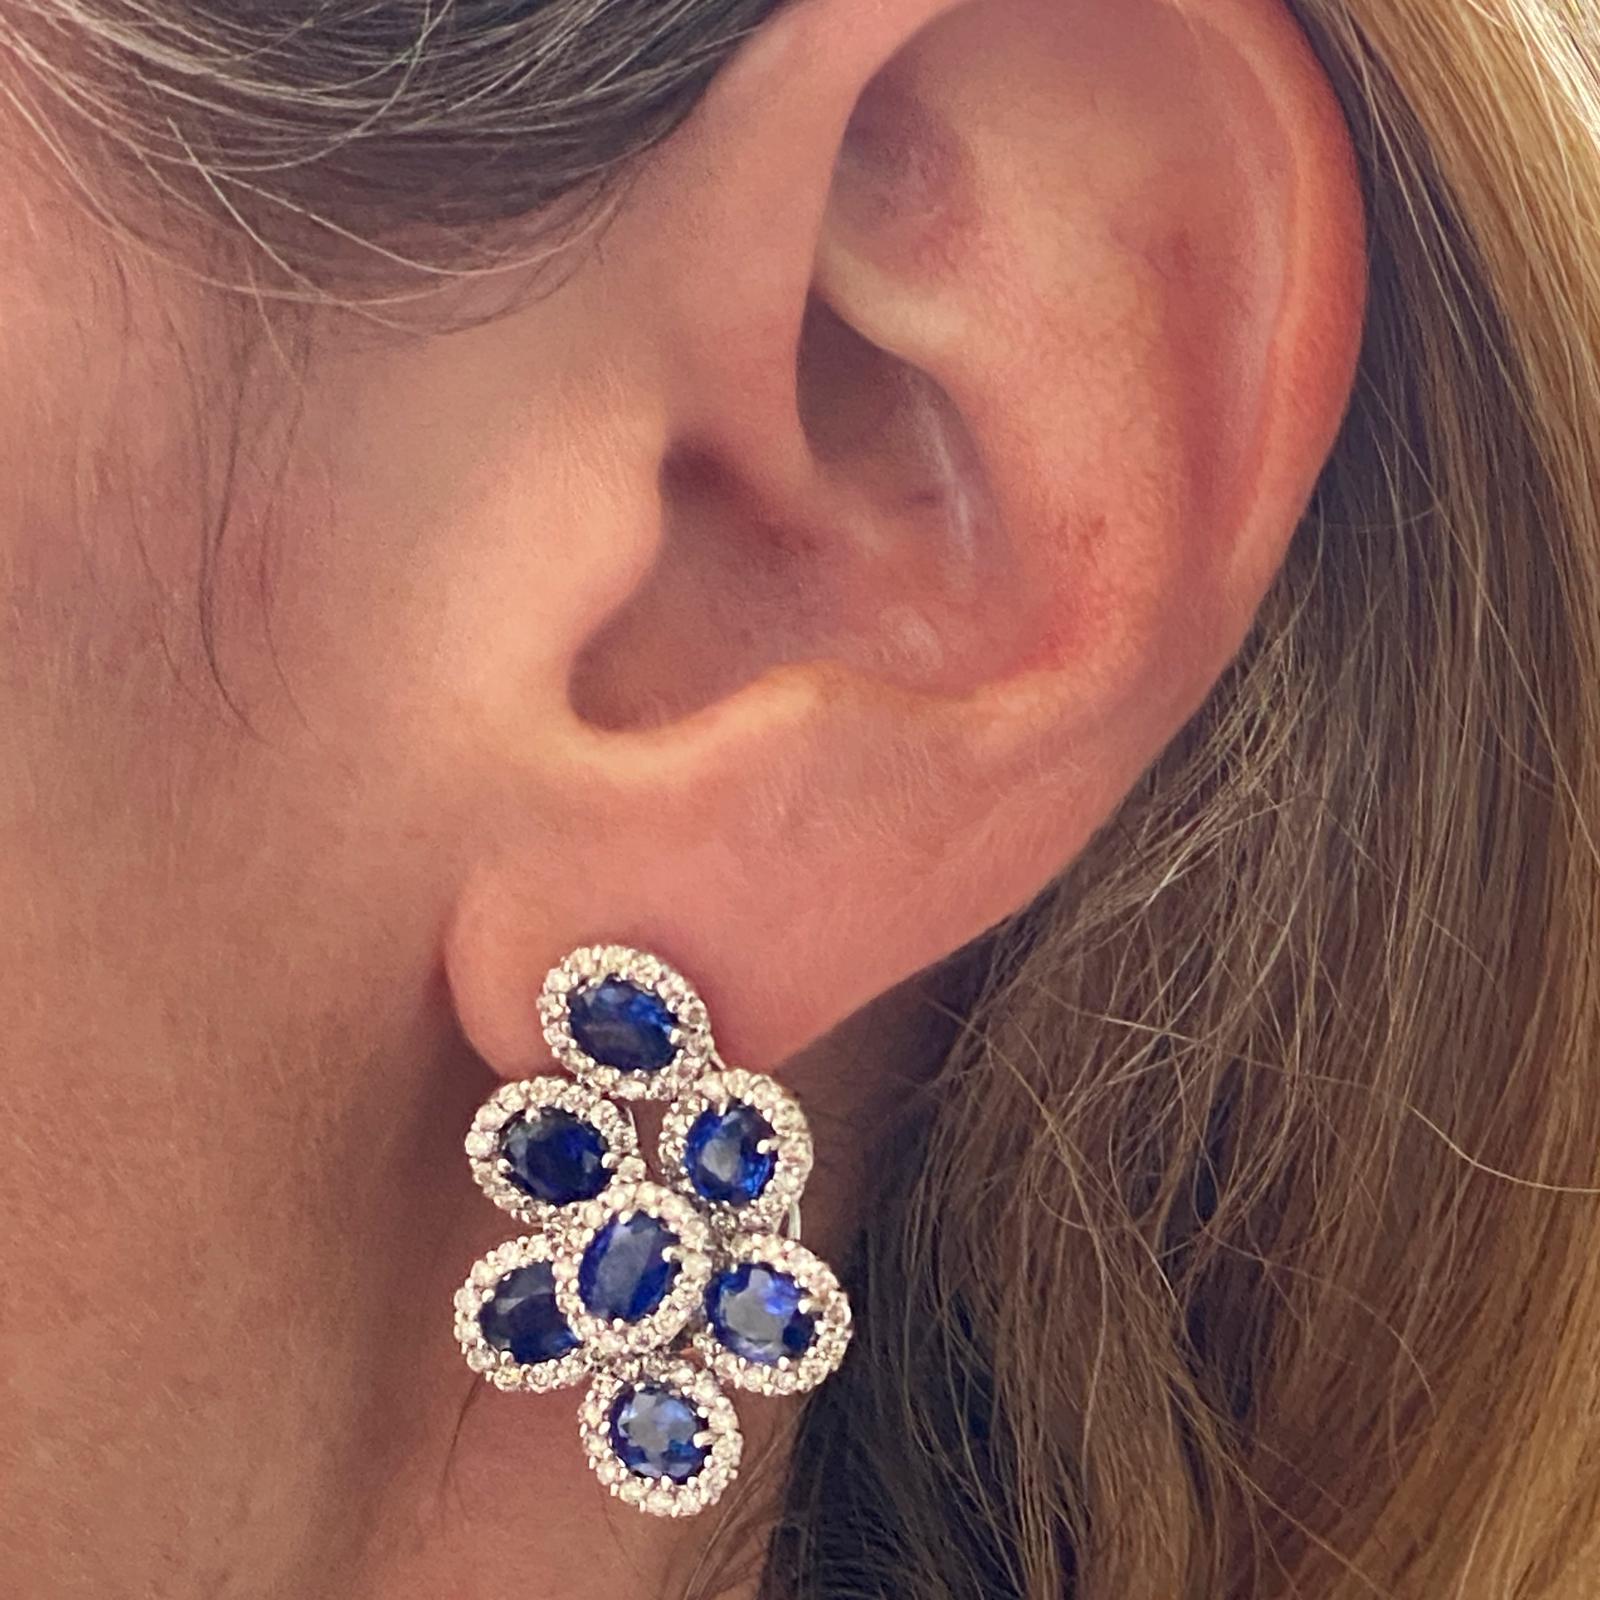 De superbes boucles d'oreilles en saphir et diamant façonnées en or blanc 18 carats. Les boucles d'oreilles comportent 14 saphirs bleus naturels d'un poids total de 6.30 carats. Les saphirs sont entourés de diamants ronds de taille brillant d'un